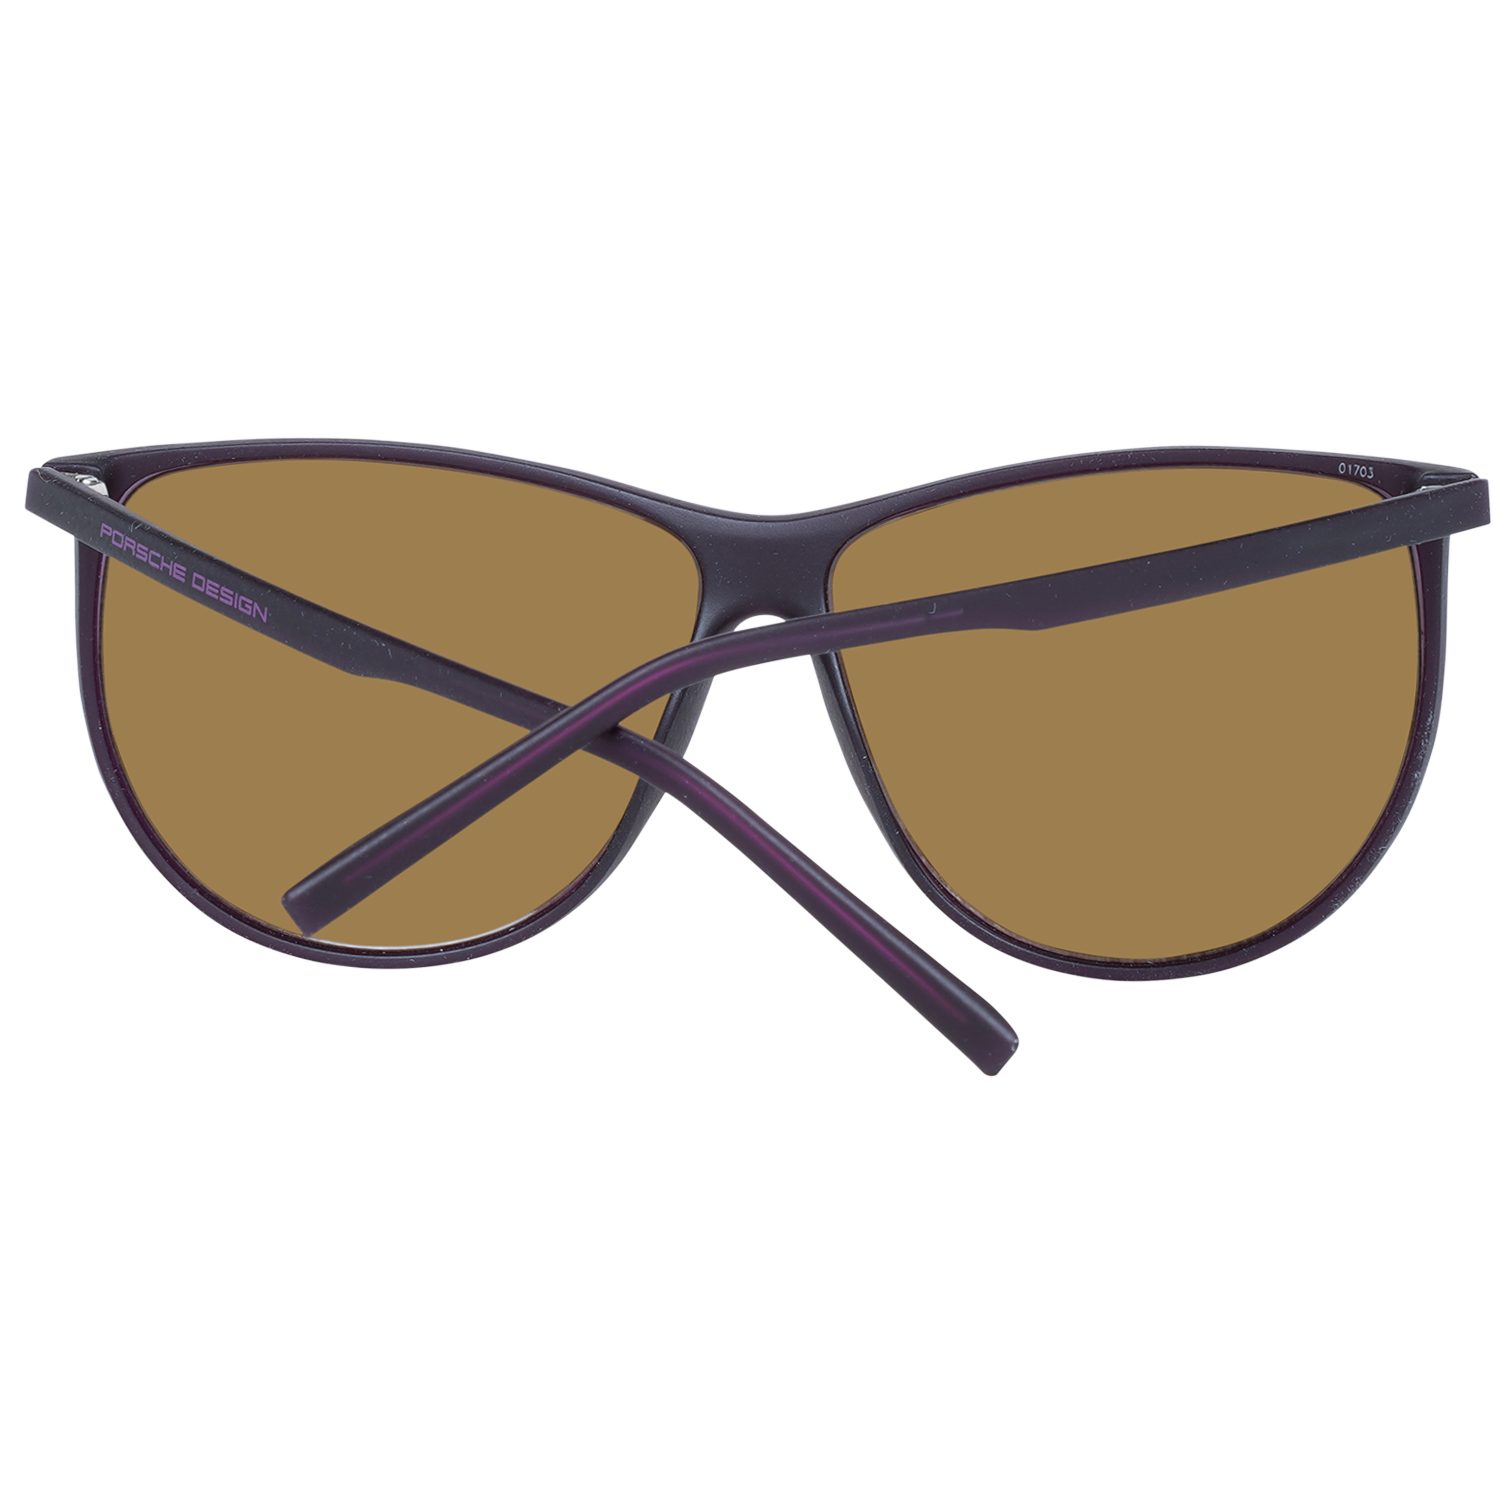 PORSCHE Design Sonnenbrille